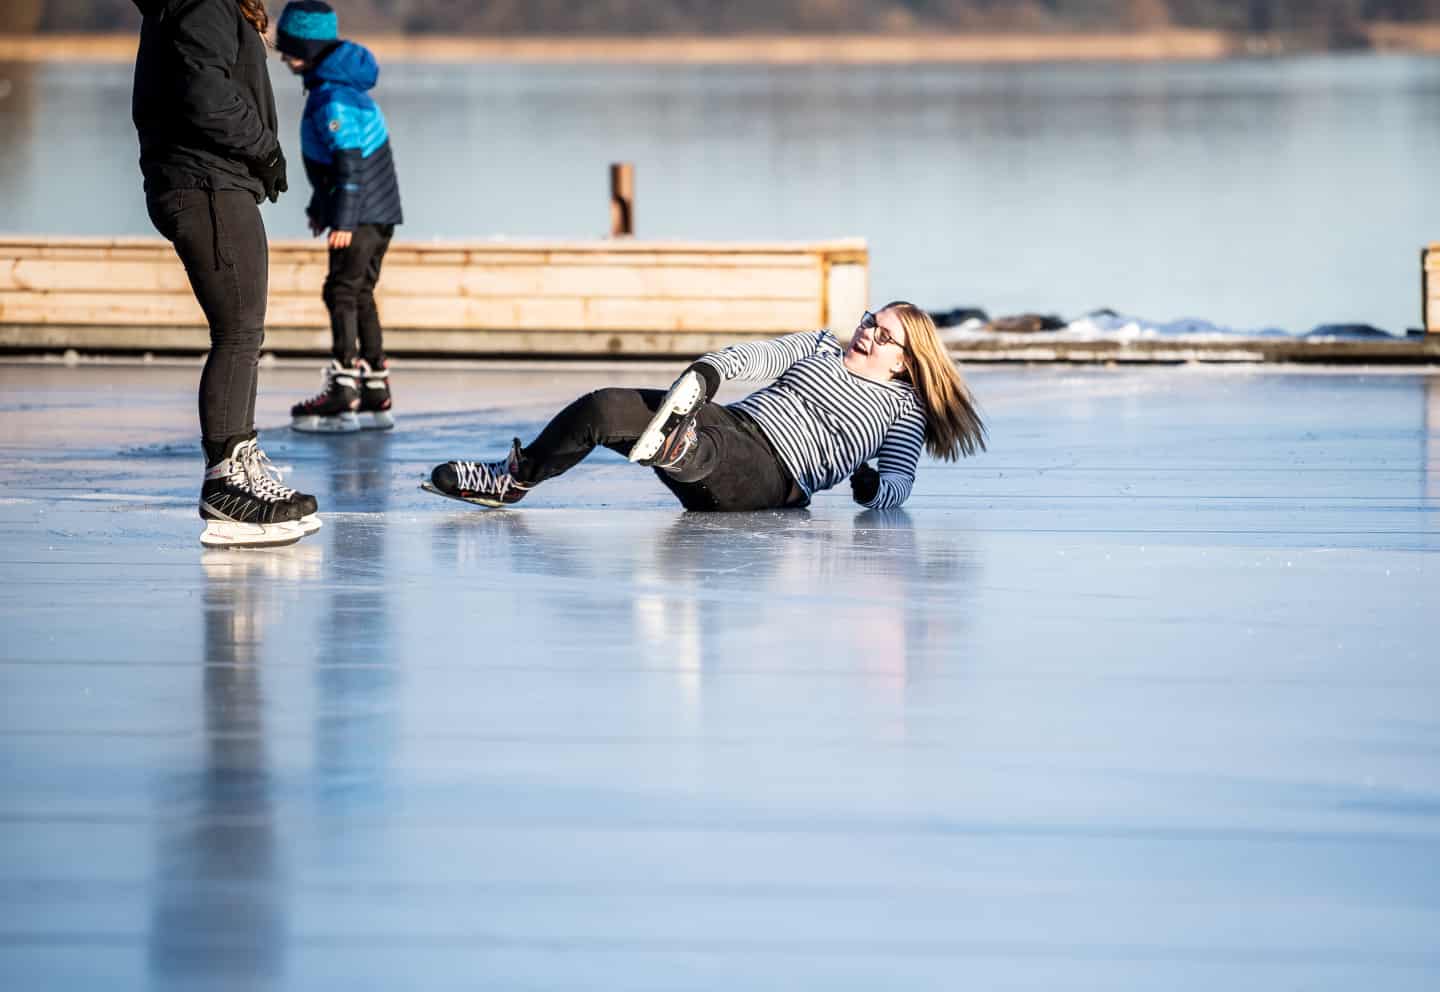 10.000 skøjtede julemåneden | viborg-folkeblad.dk